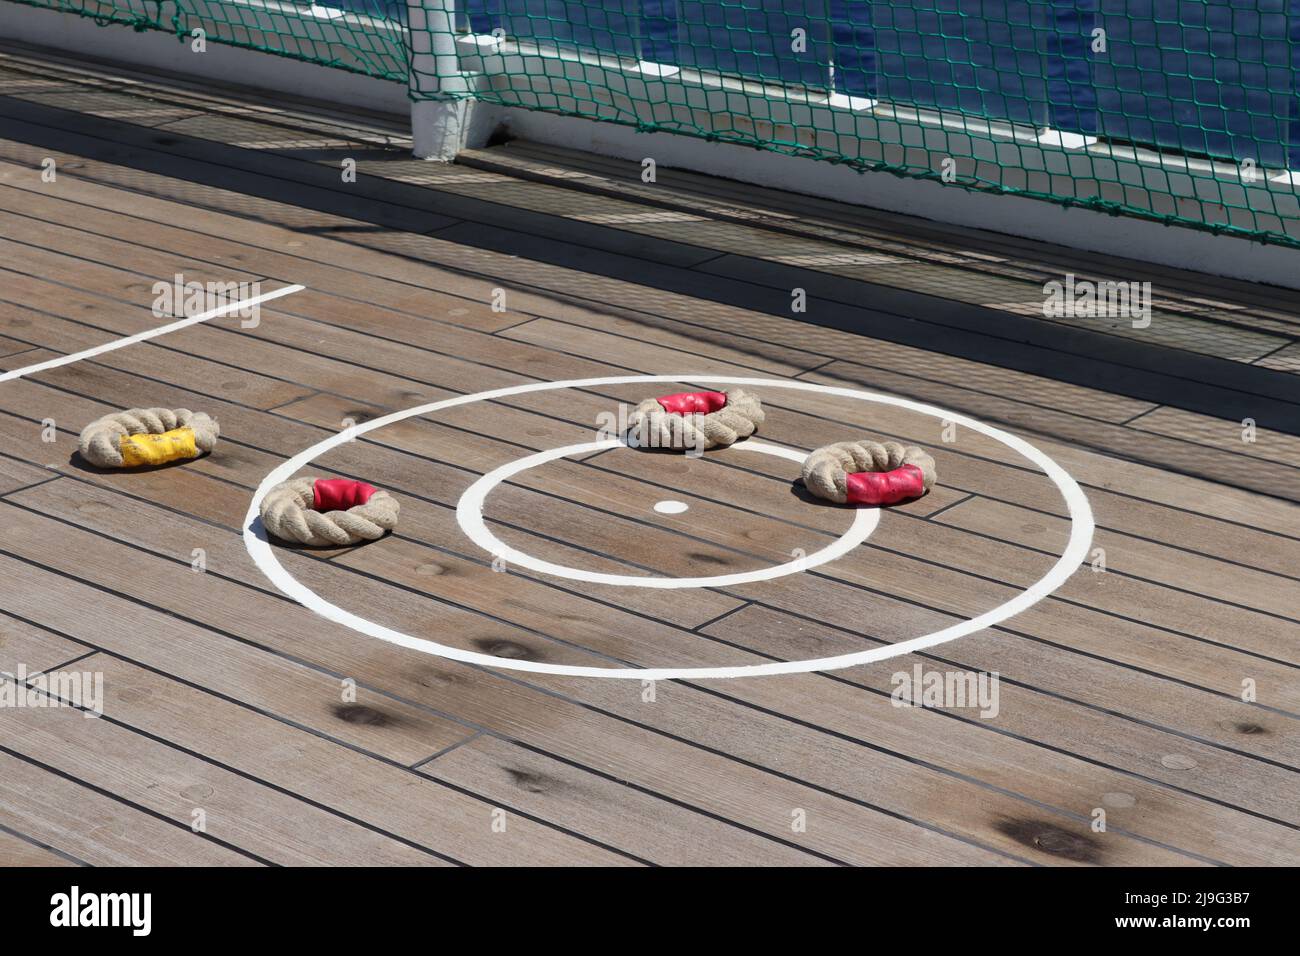 Deck Quoits, un tradizionale gioco di coperta giocato dai passeggeri delle navi da crociera - anelli di corda sono gettati a un bersaglio circolare Foto Stock